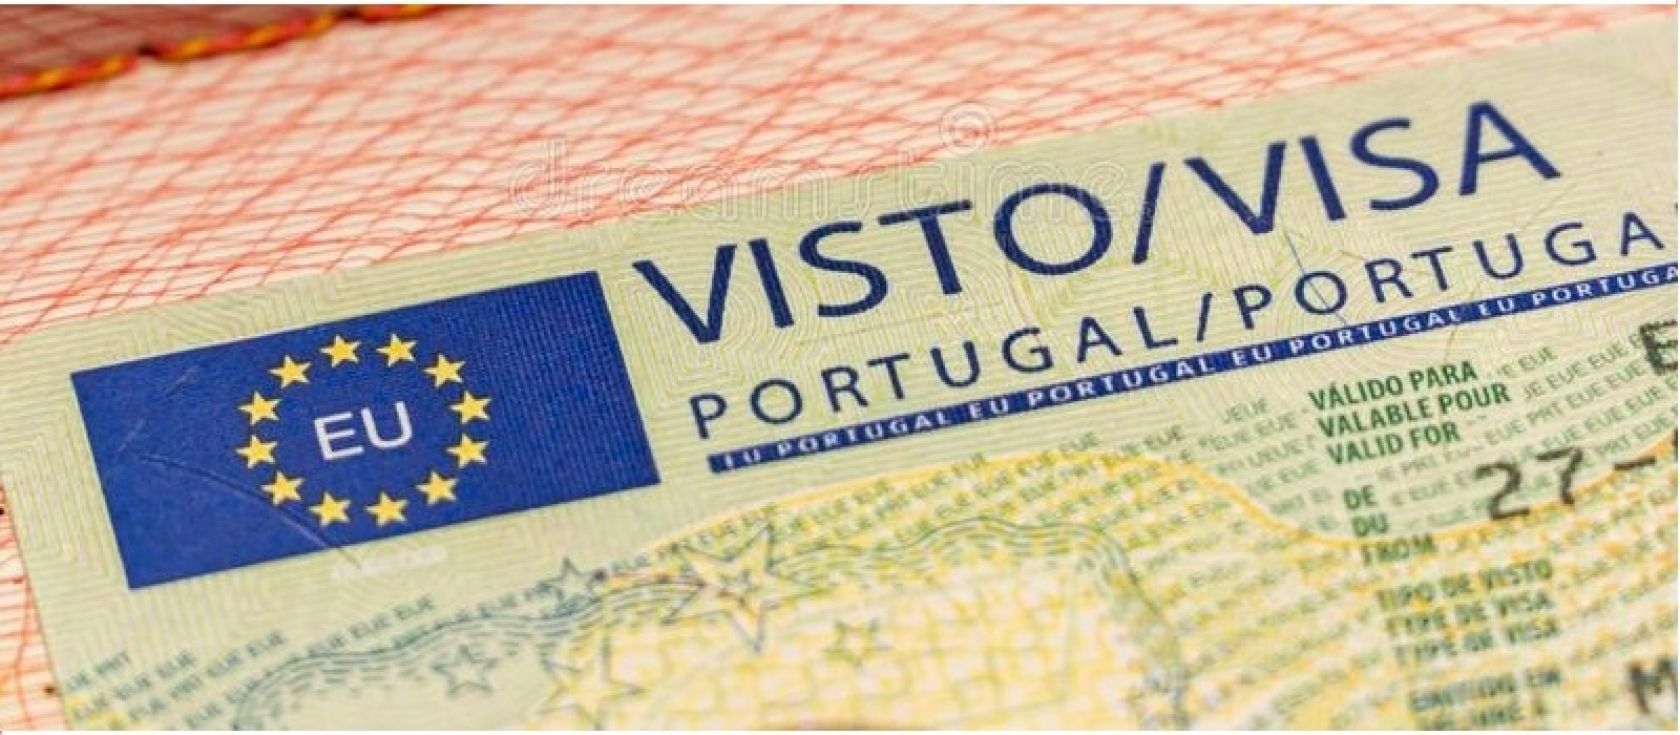 Aktuelle, verfügbare VISA-OPTIONEN in Portugal